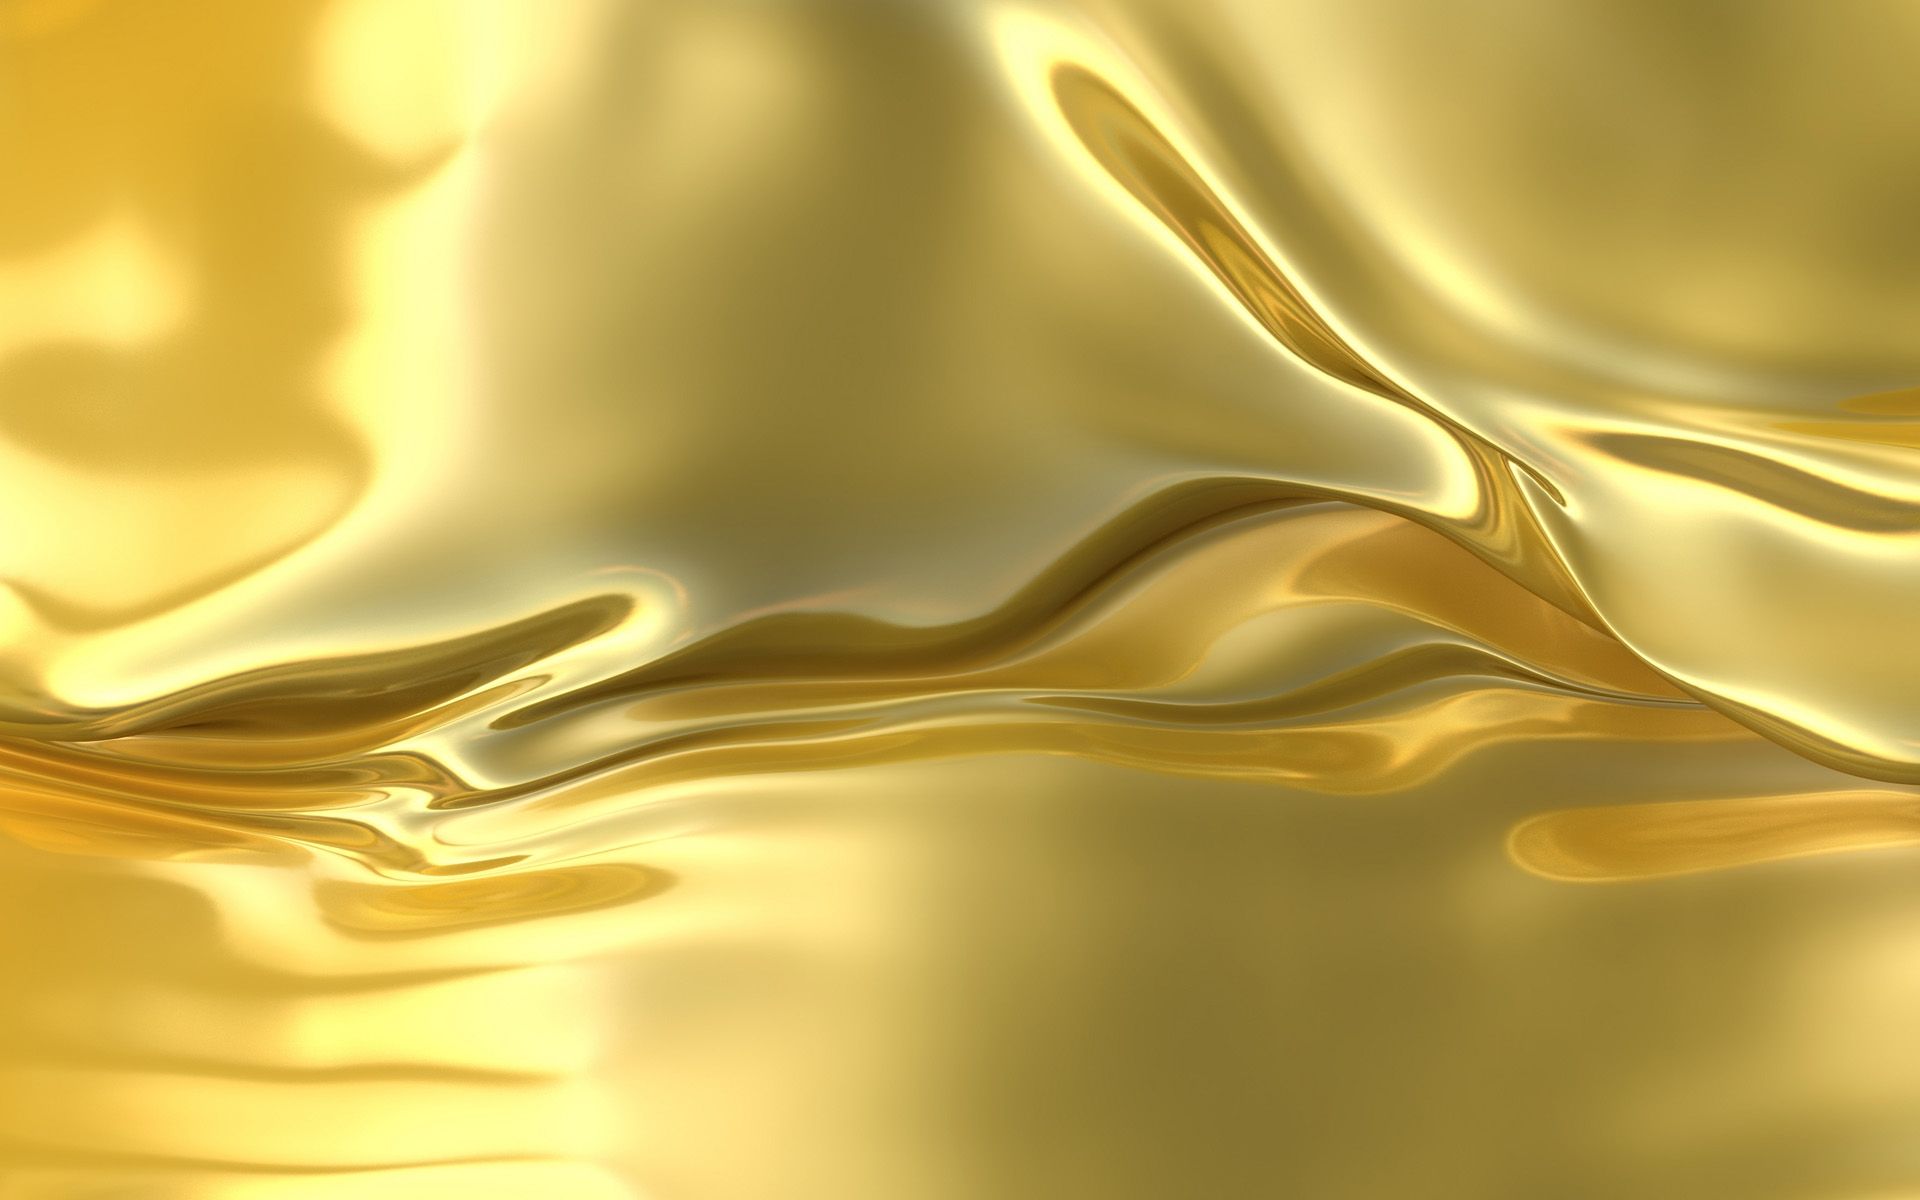 Cùng chiêm ngưỡng hình nền vàng 24 carat đẹp đến ngỡ ngàng và làm say đắm trái tim bạn. Tông màu vàng sang trọng kết hợp với độ sáng bóng của vàng 24 carat sẽ tạo nên một không gian ấn tượng, đầy quyền lực và giàu có.